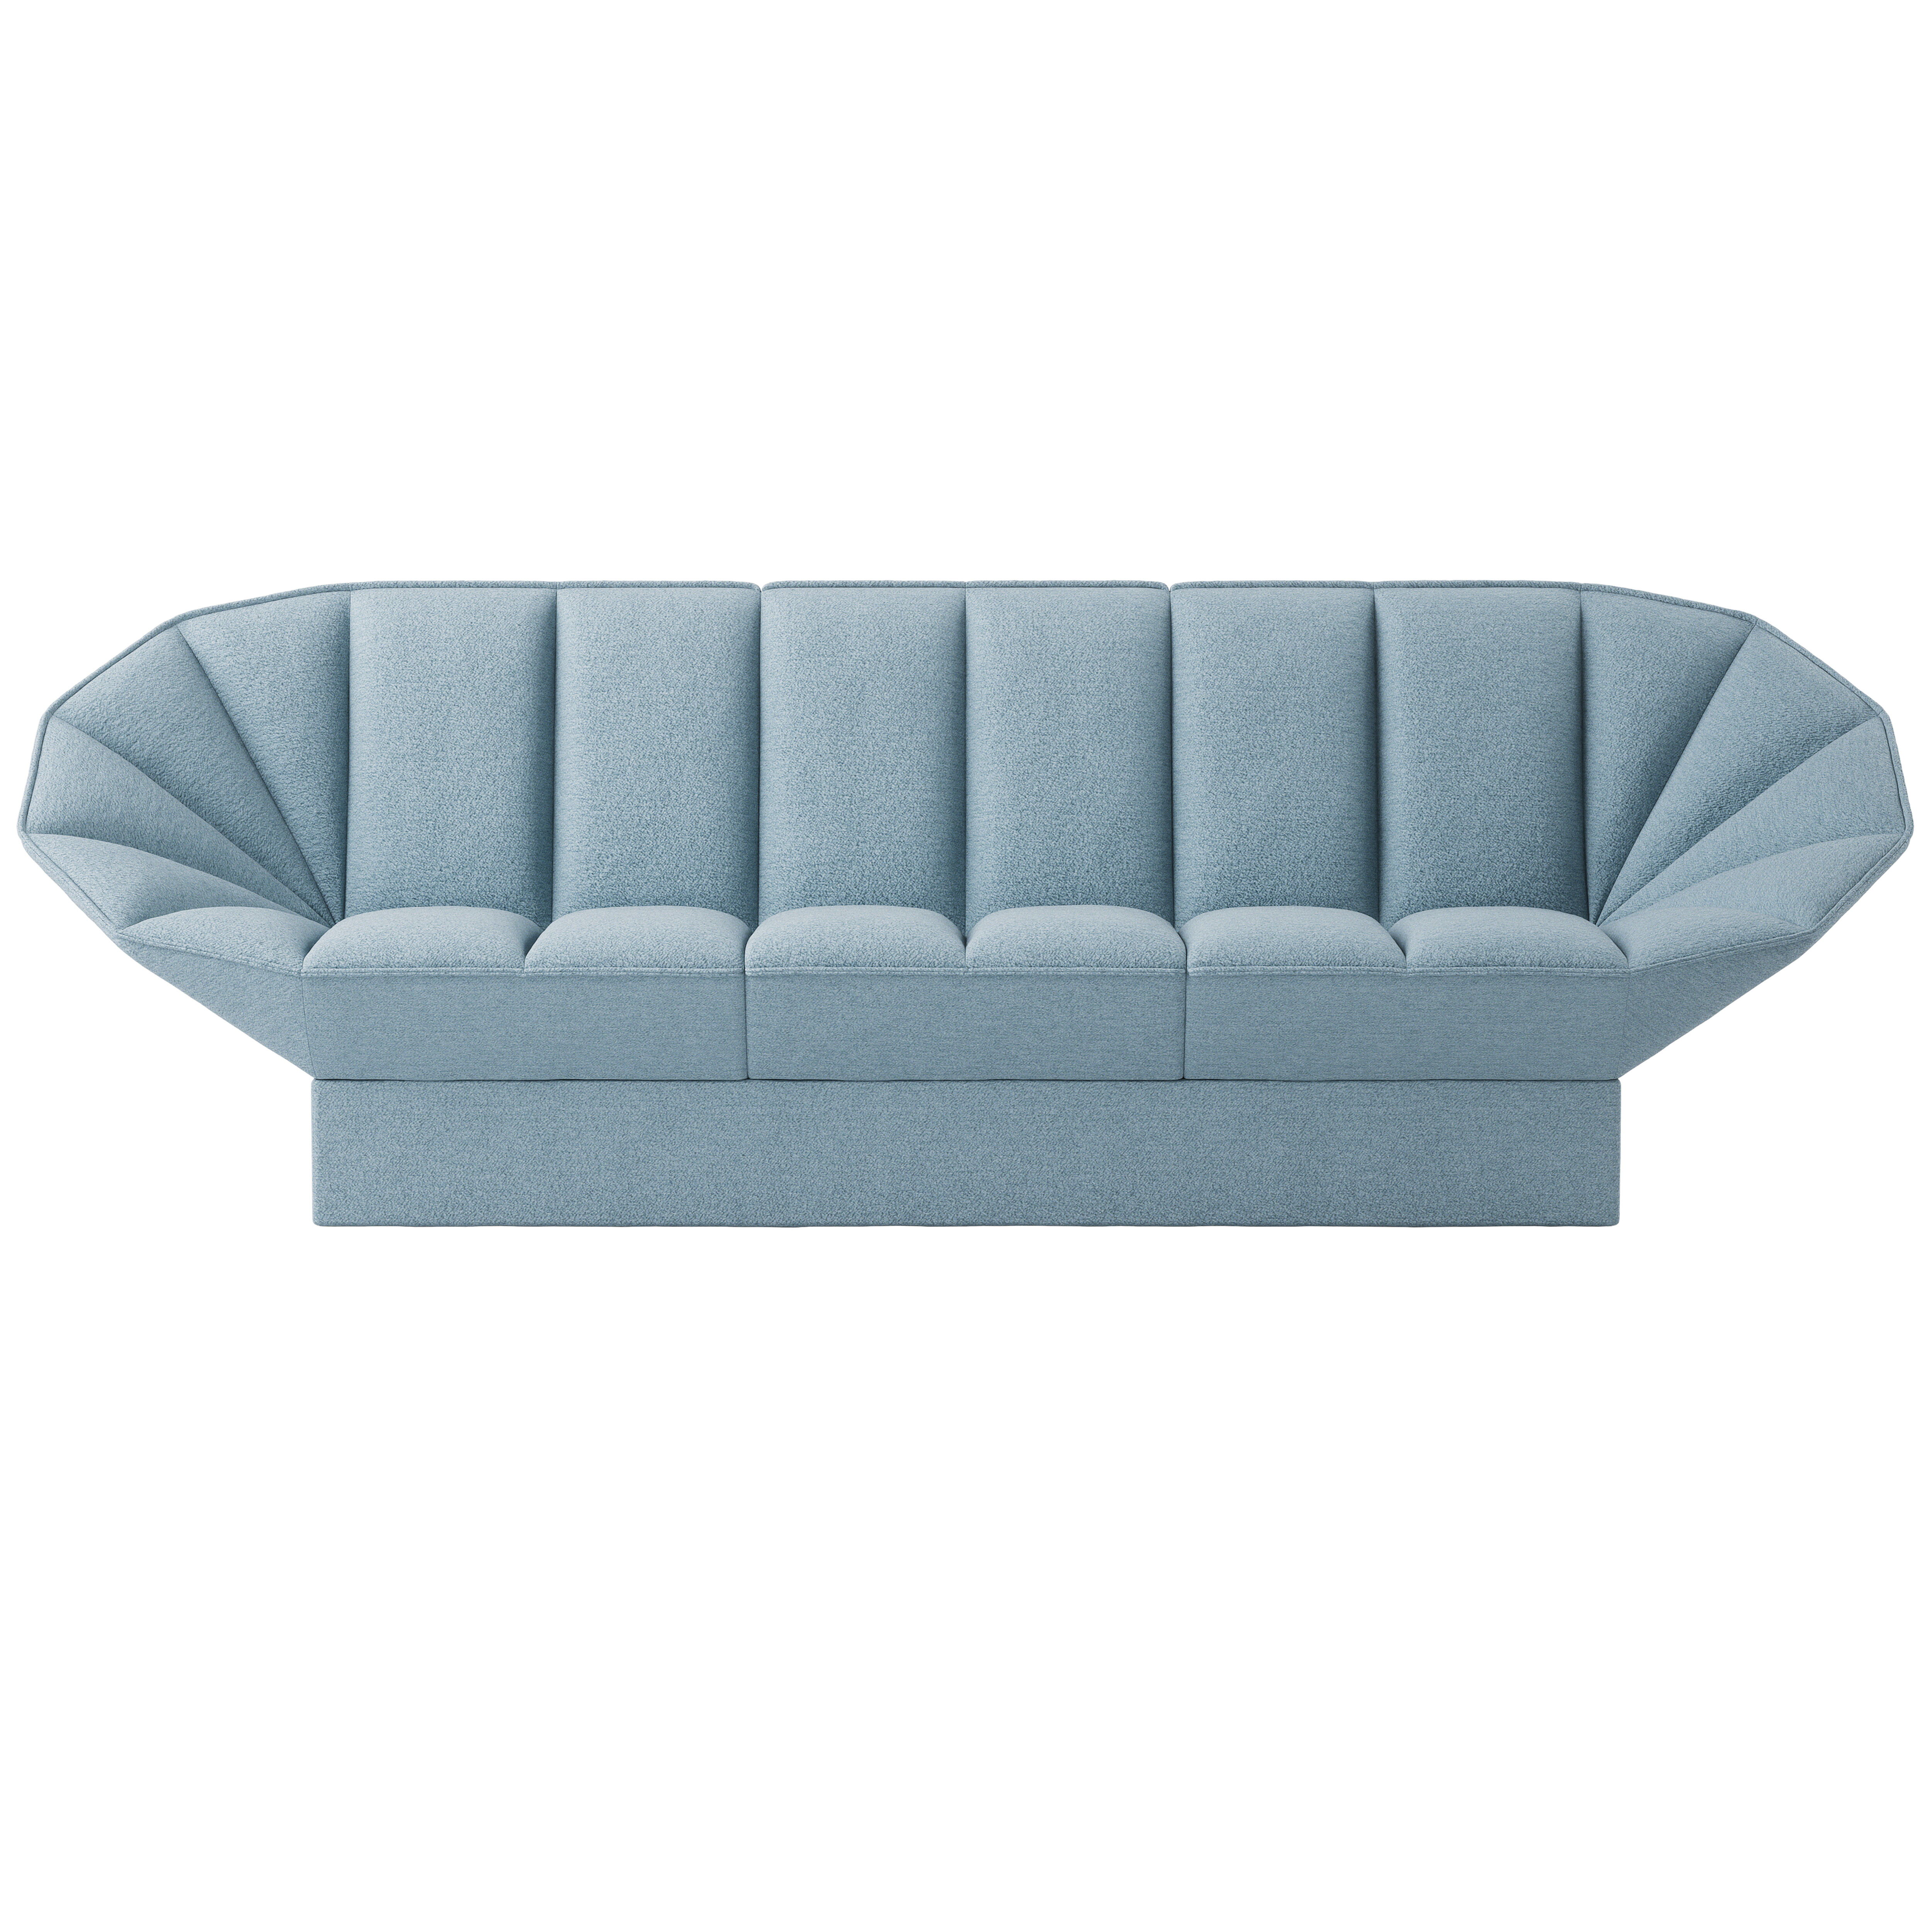 Ori 3- seater sofa product image 6